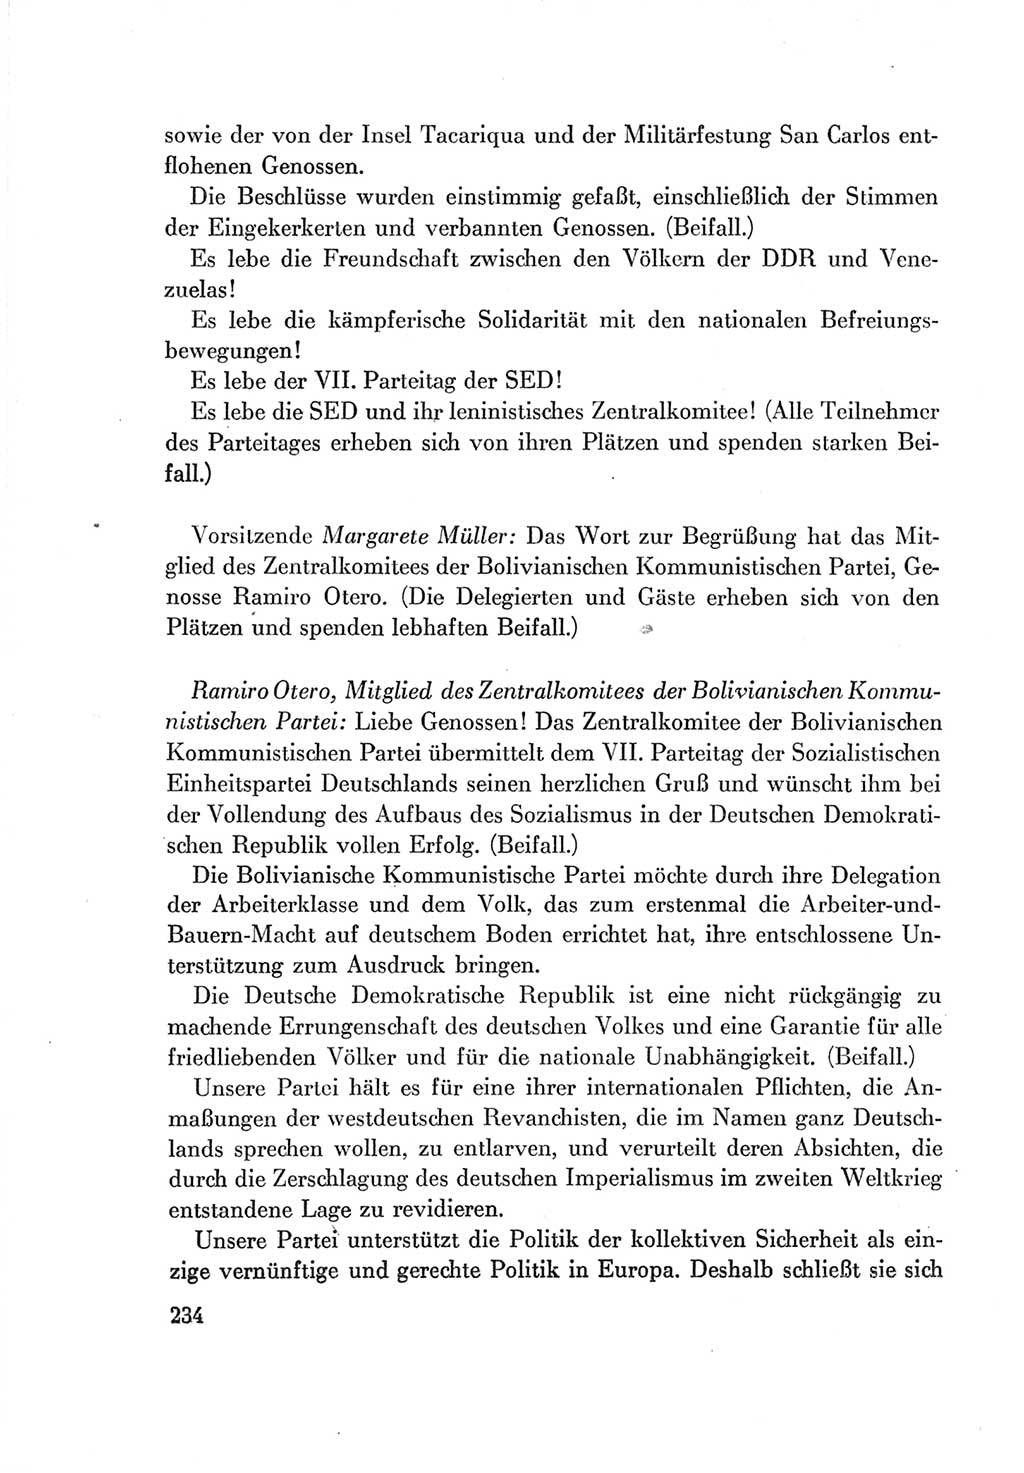 Protokoll der Verhandlungen des Ⅶ. Parteitages der Sozialistischen Einheitspartei Deutschlands (SED) [Deutsche Demokratische Republik (DDR)] 1967, Band Ⅱ, Seite 234 (Prot. Verh. Ⅶ. PT SED DDR 1967, Bd. Ⅱ, S. 234)